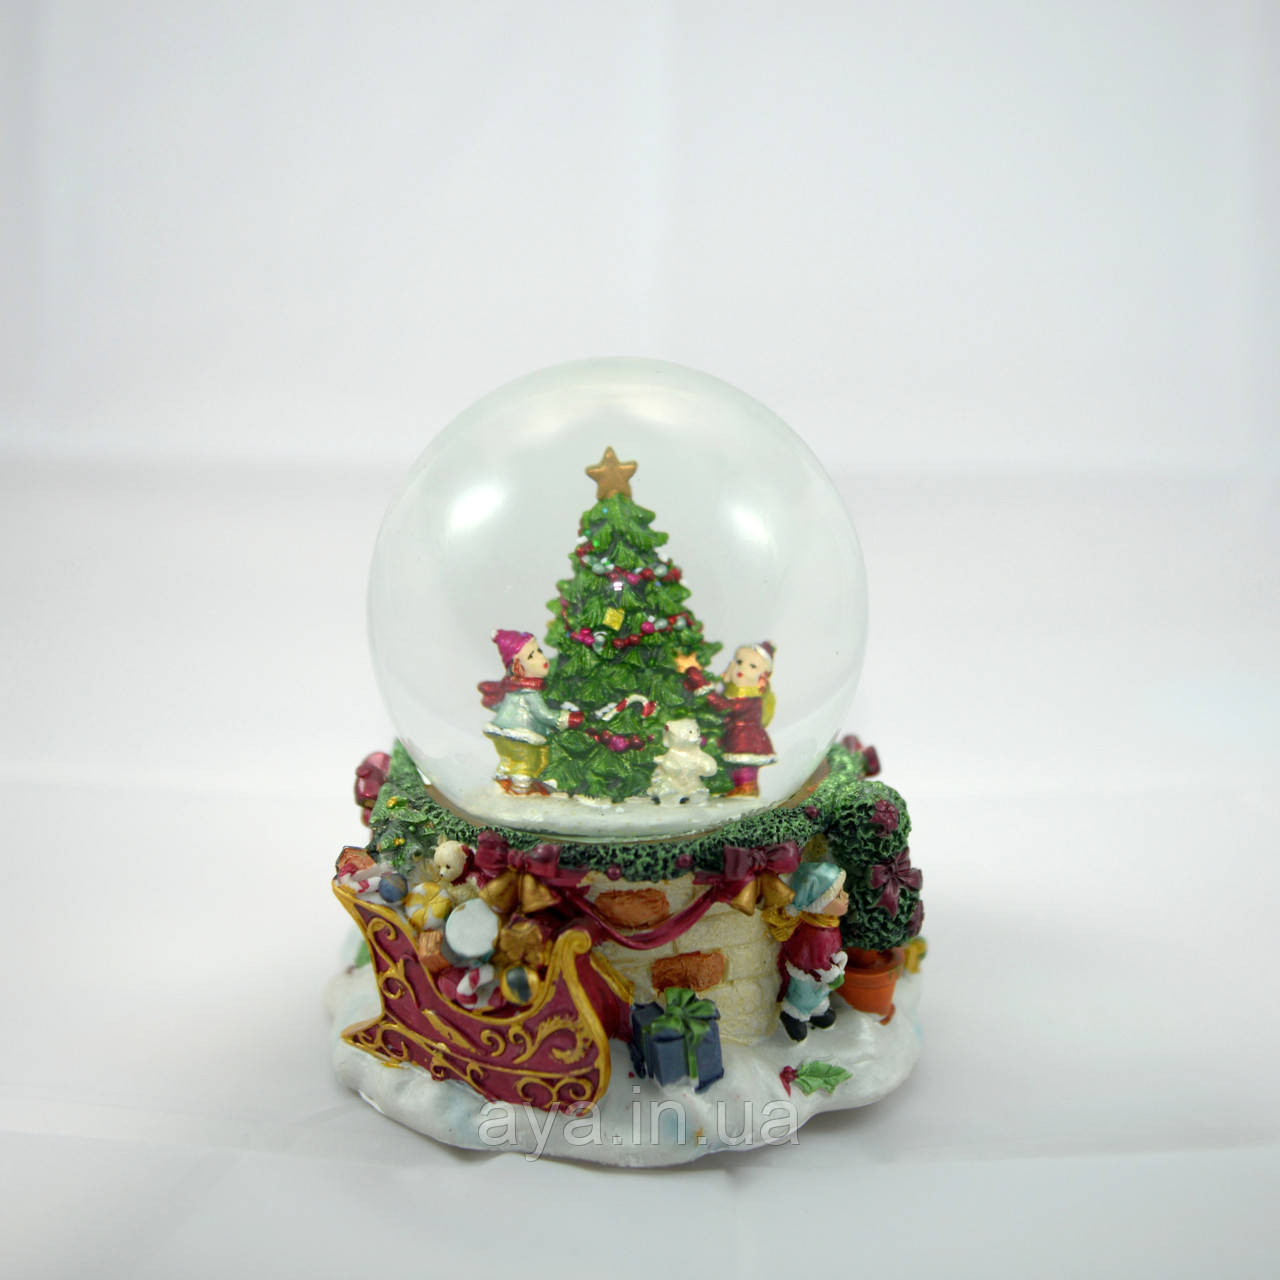 LV 181021 Новорічна куля з снігом, що падає, Waterball xmas W14/5D11